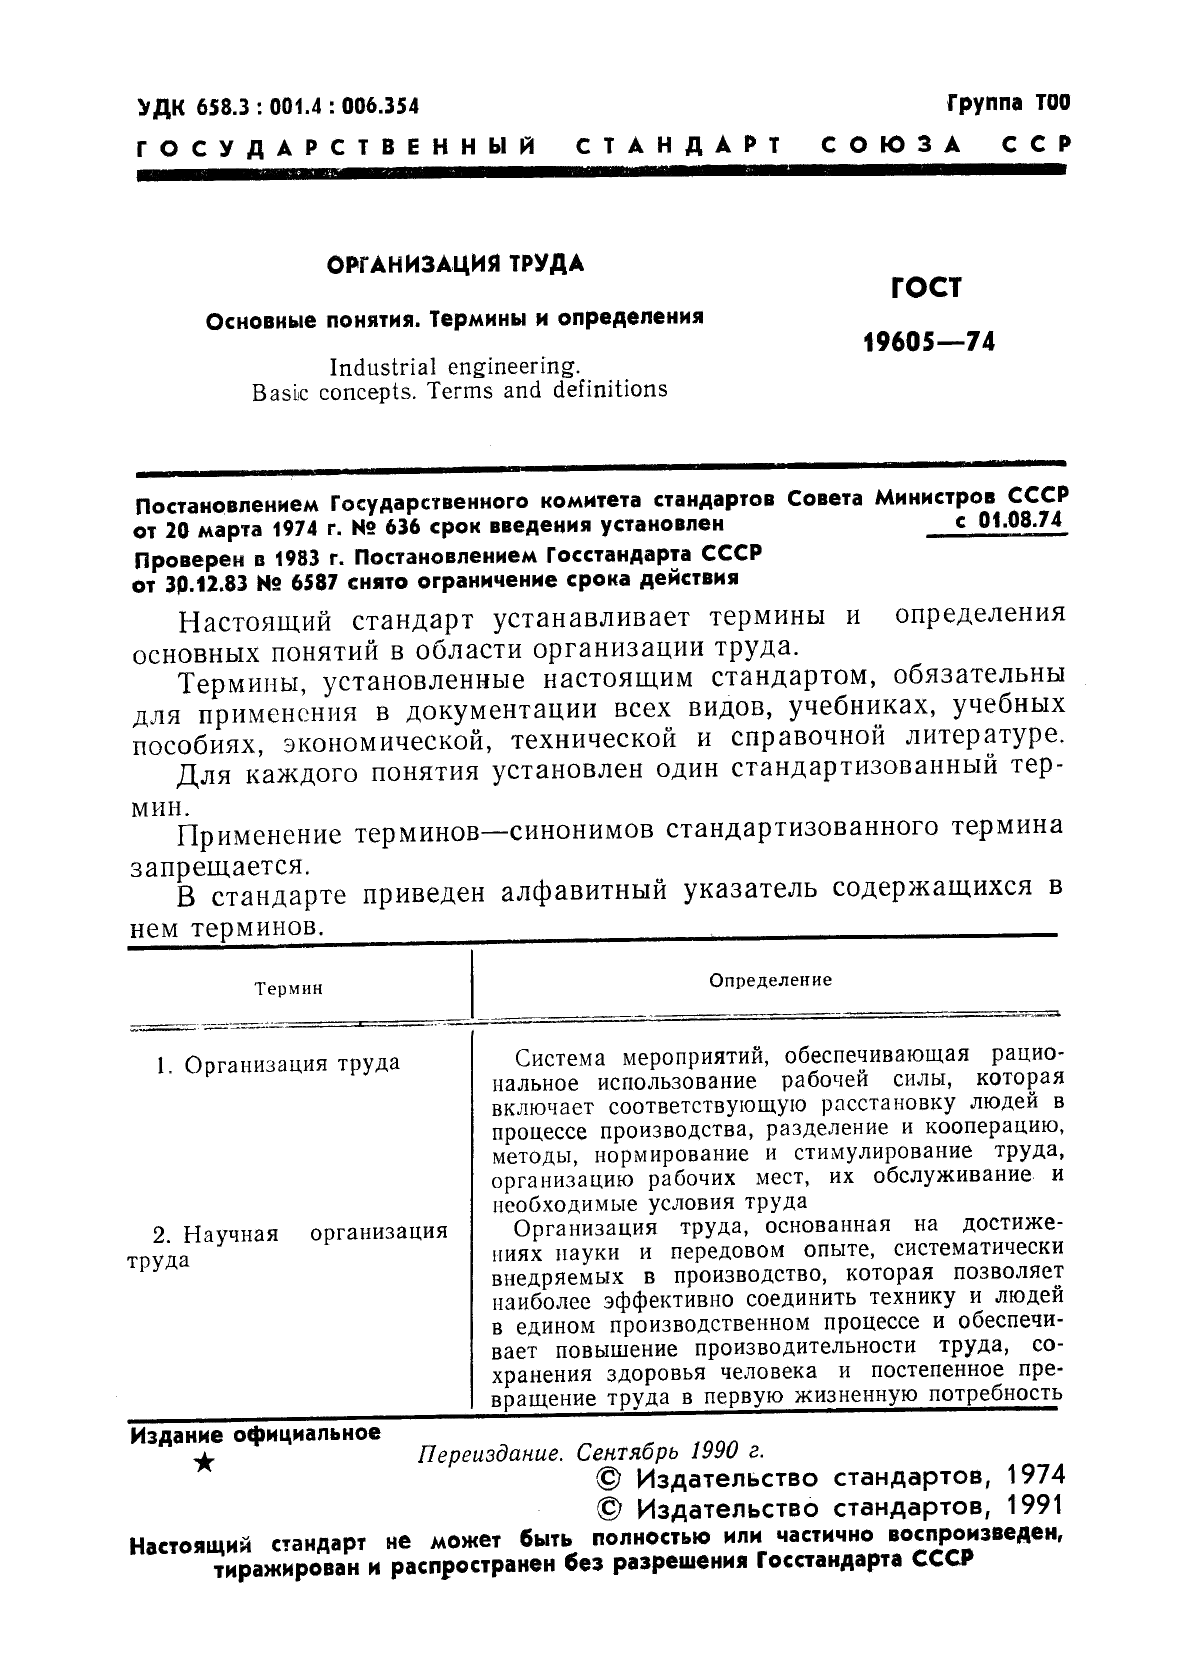 ГОСТ 19605-74 Организация труда. Основные понятия. Термины и определения (фото 2 из 4)